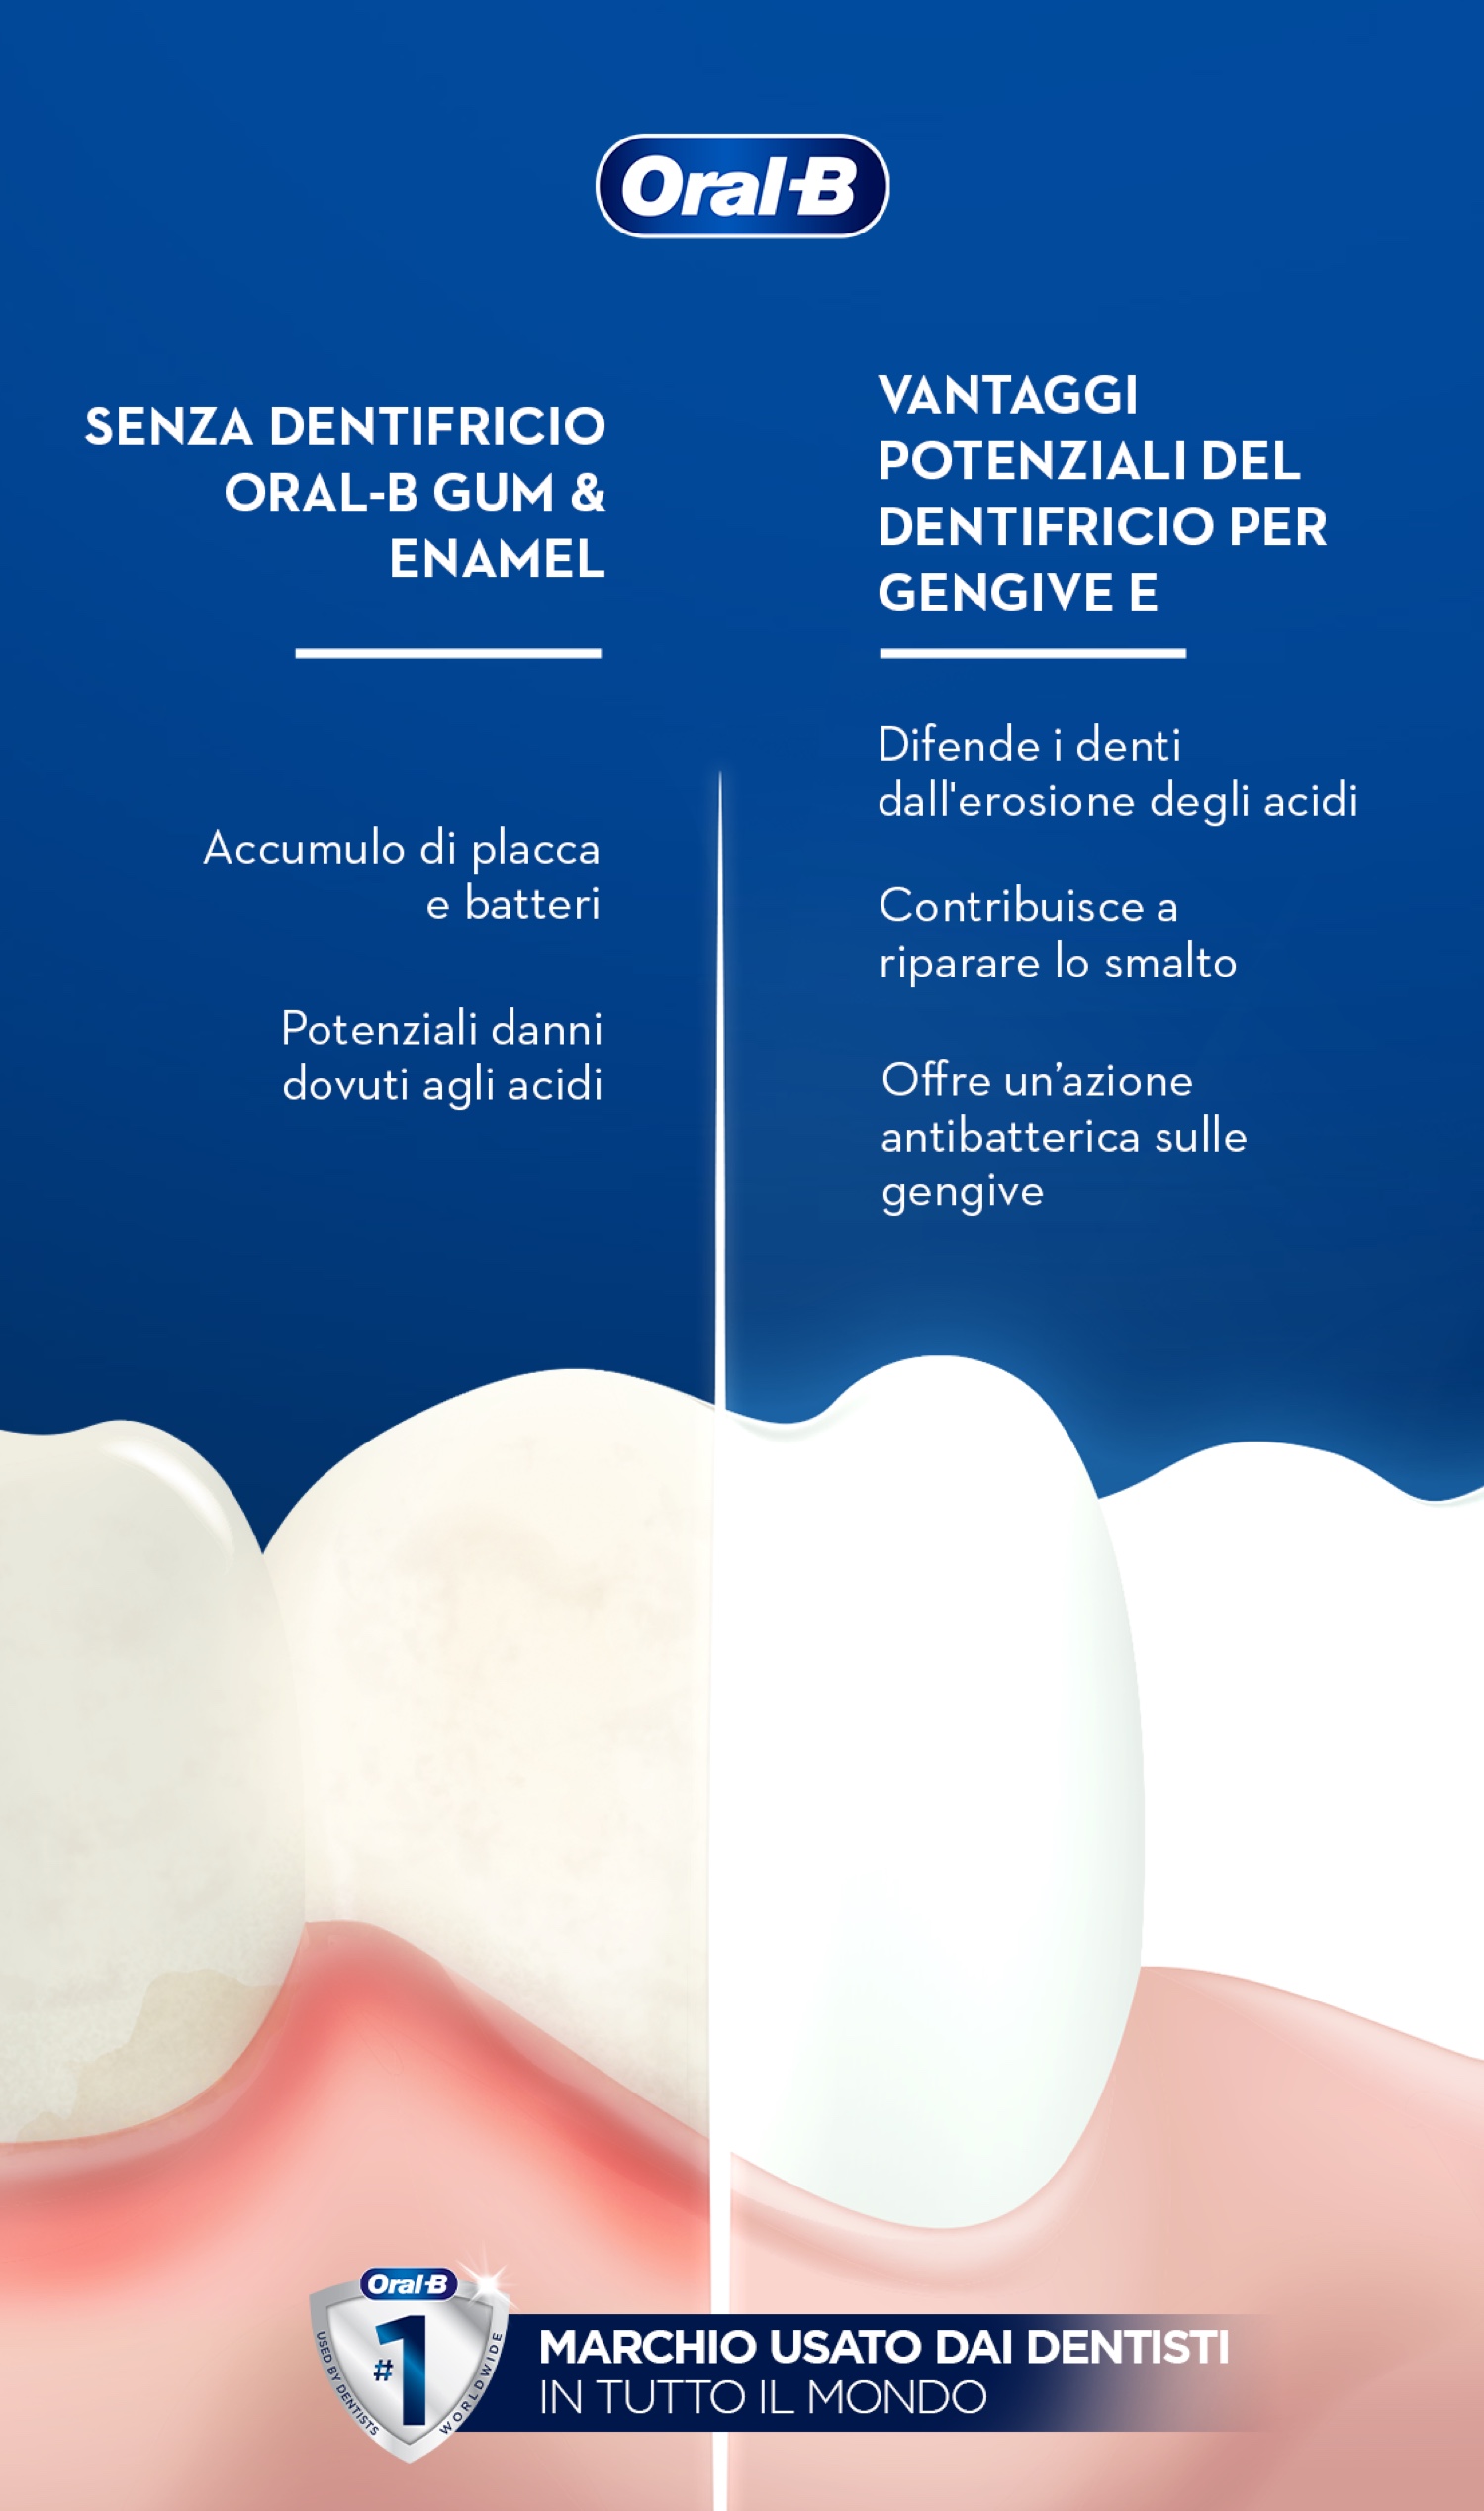 Oral B Dentifricio Repair, Gengive e Smalto, con Azione